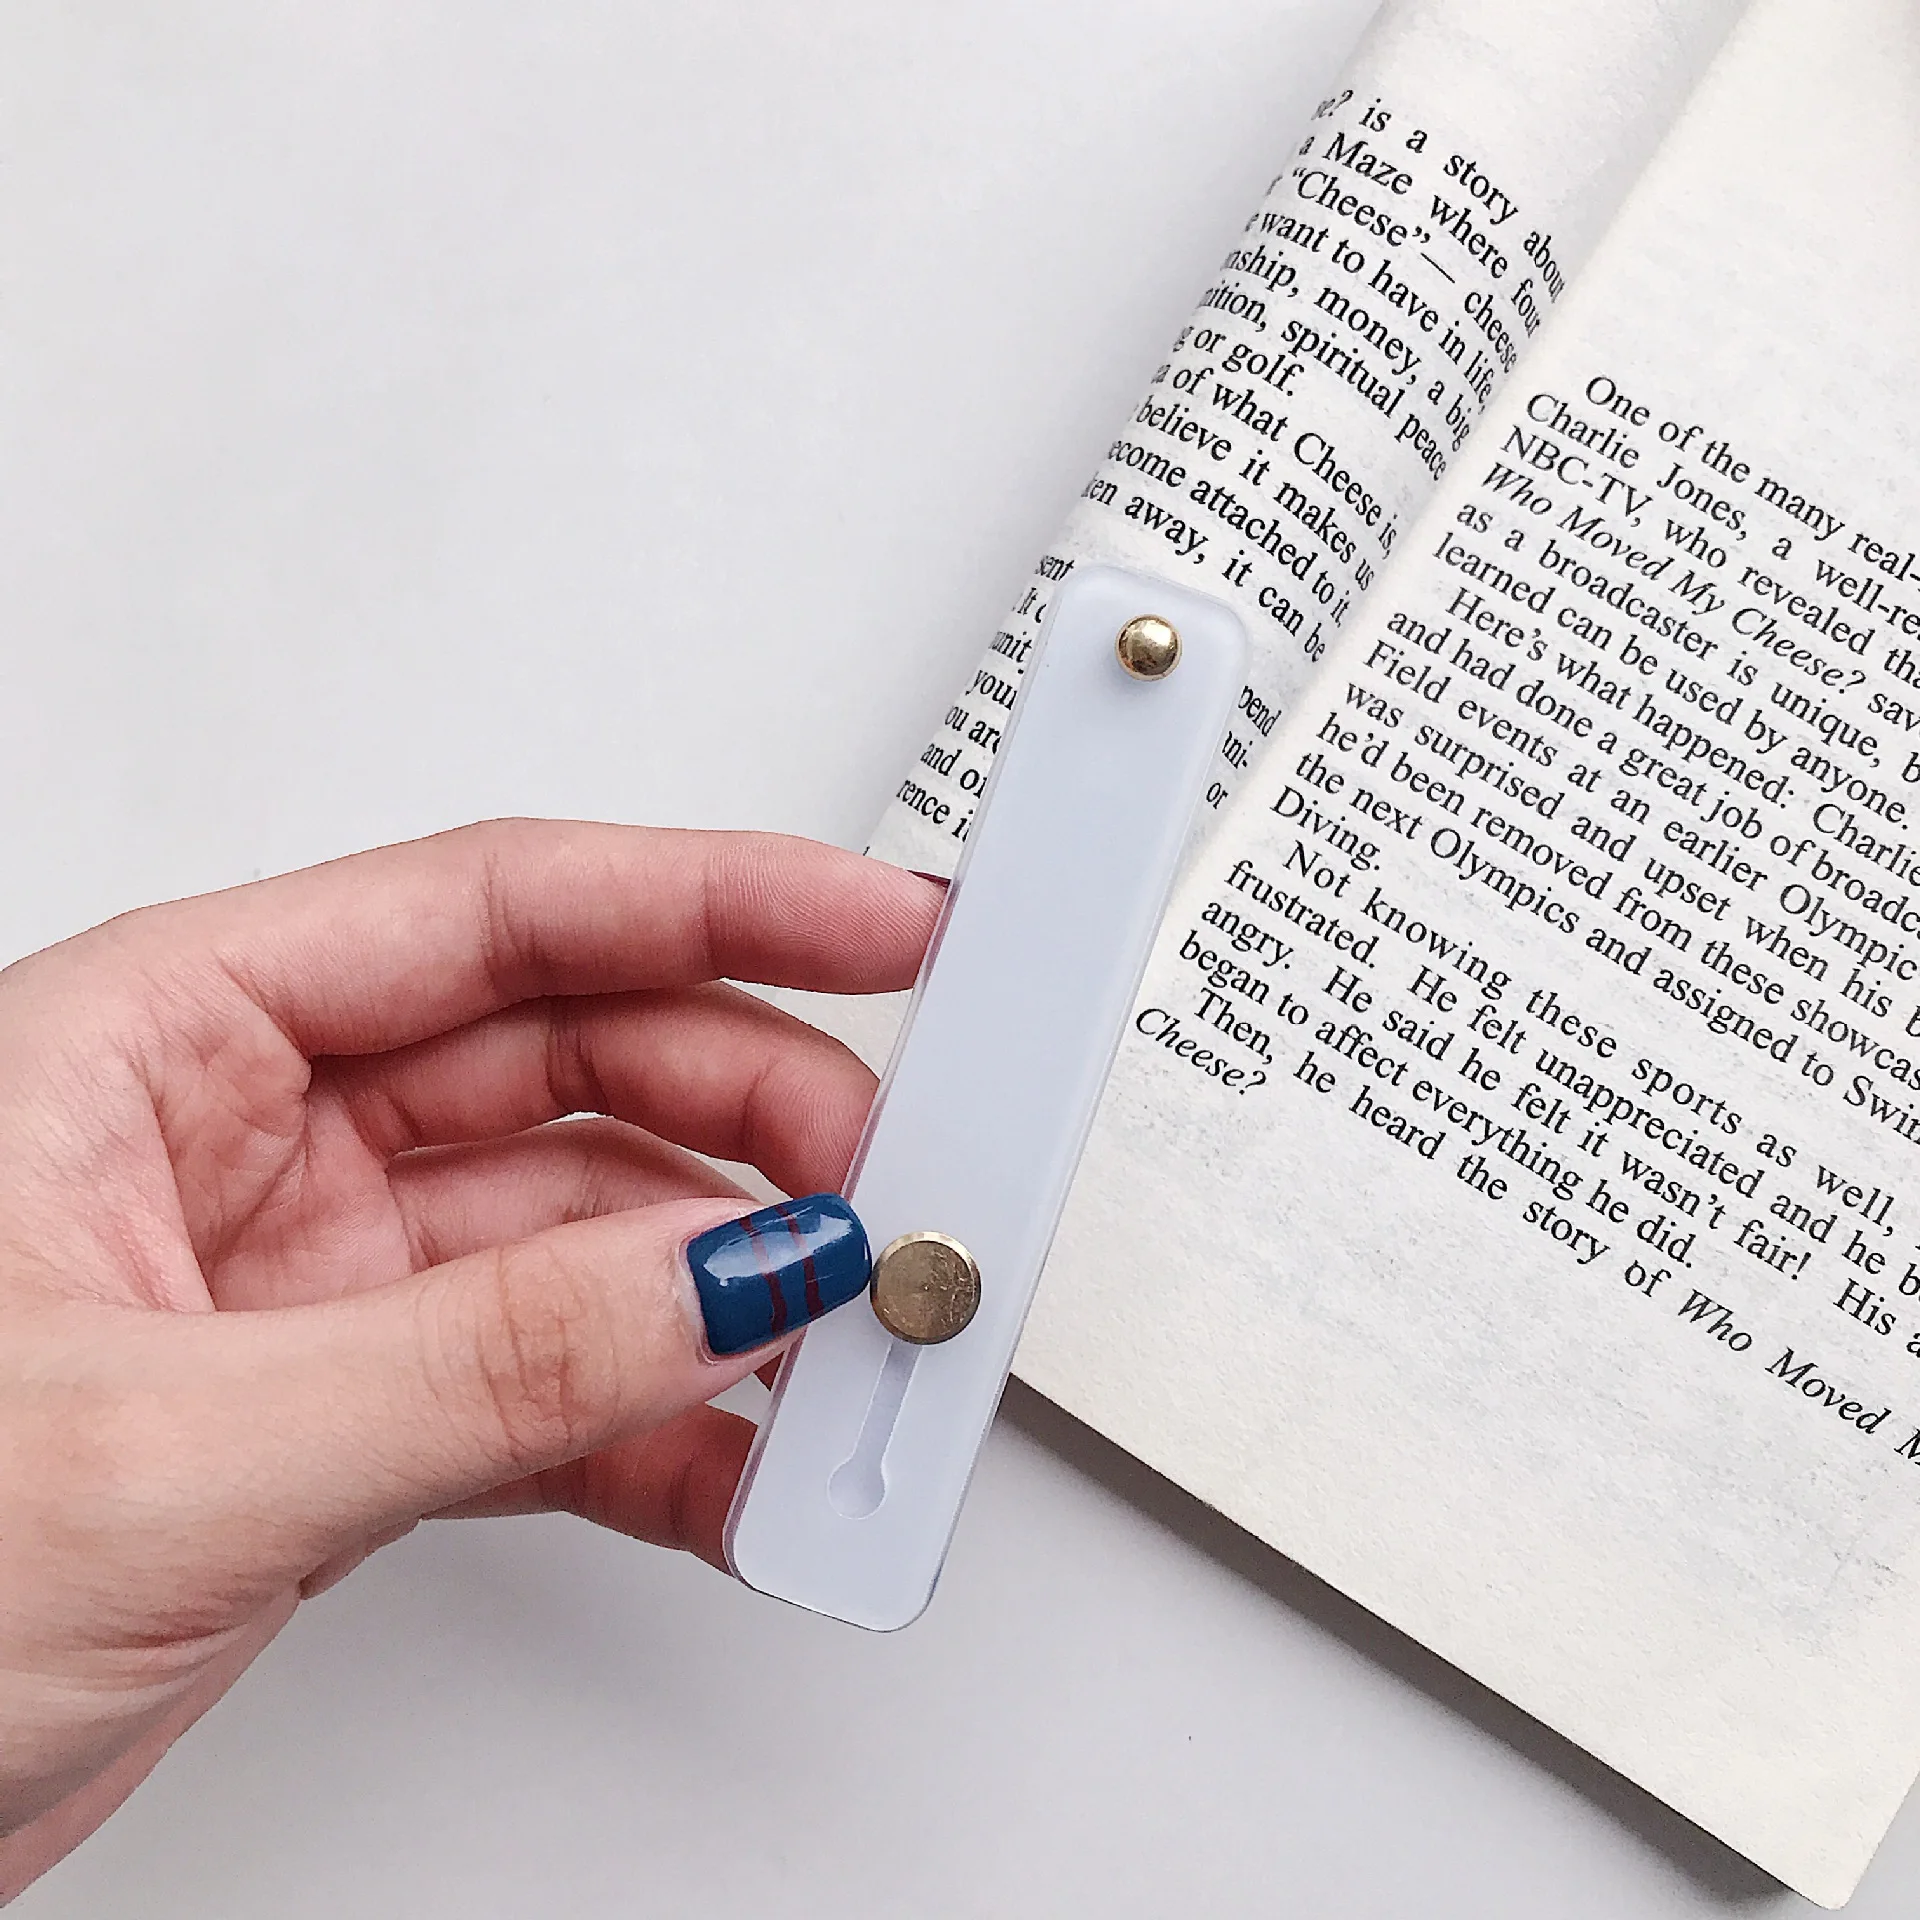 Силиконовый браслет кольцо-держатель для пальца подставка-держатель для мобильного телефона пуш-ап Стикеры паста универсальные чехлы для мобильного телефона держатель кронштейн - Цвет: Translucent white